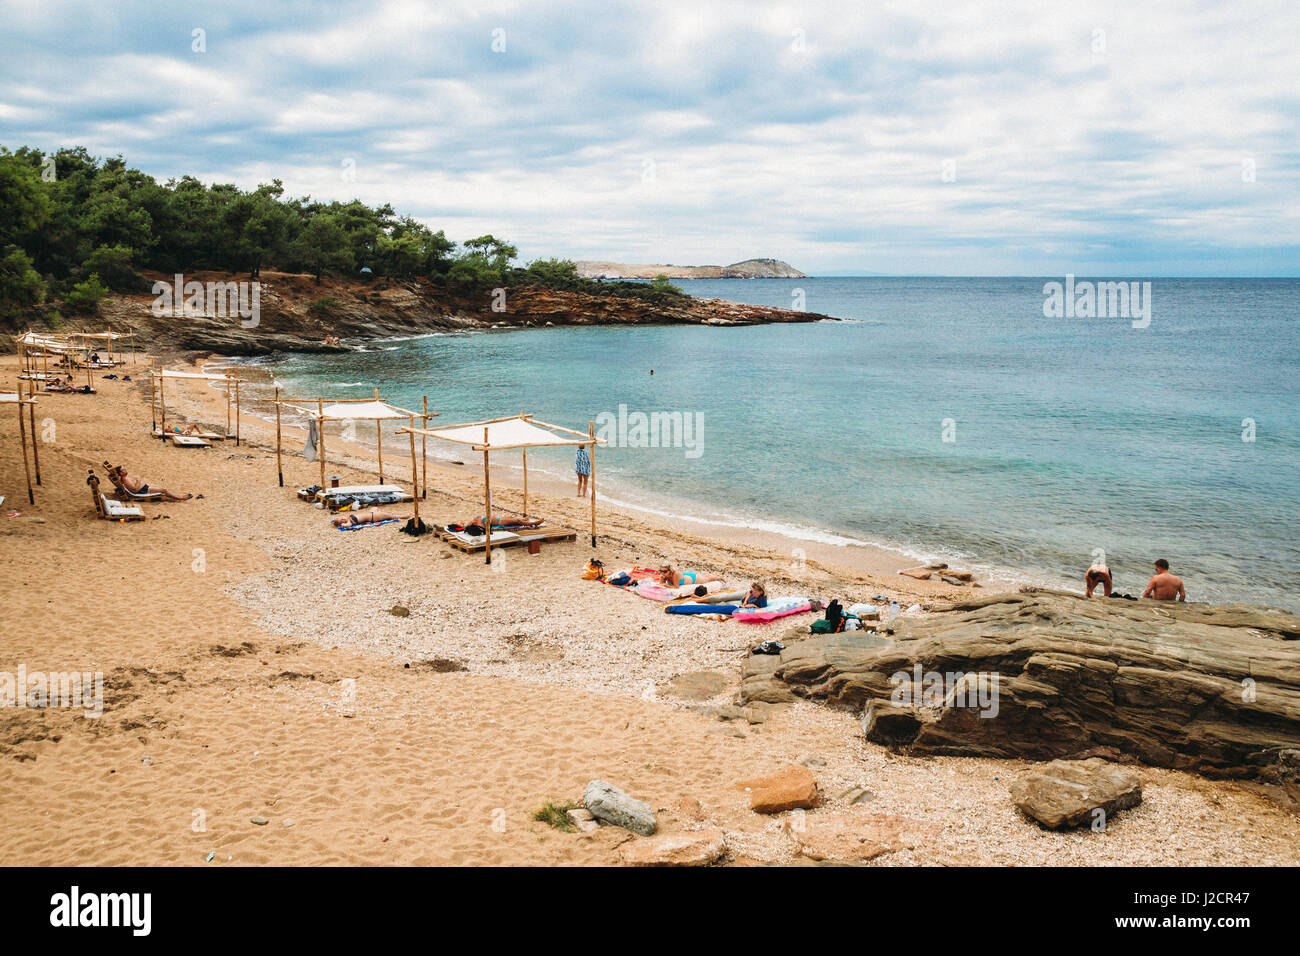 Griechenland, Thassos - 20. September: Schöner Strand in der Nähe von Potos, Touristen genießen einen schönen Sommertag am Strand auf Thassos. Retro-Filter mit Lärm hinzugefügt Stockfoto